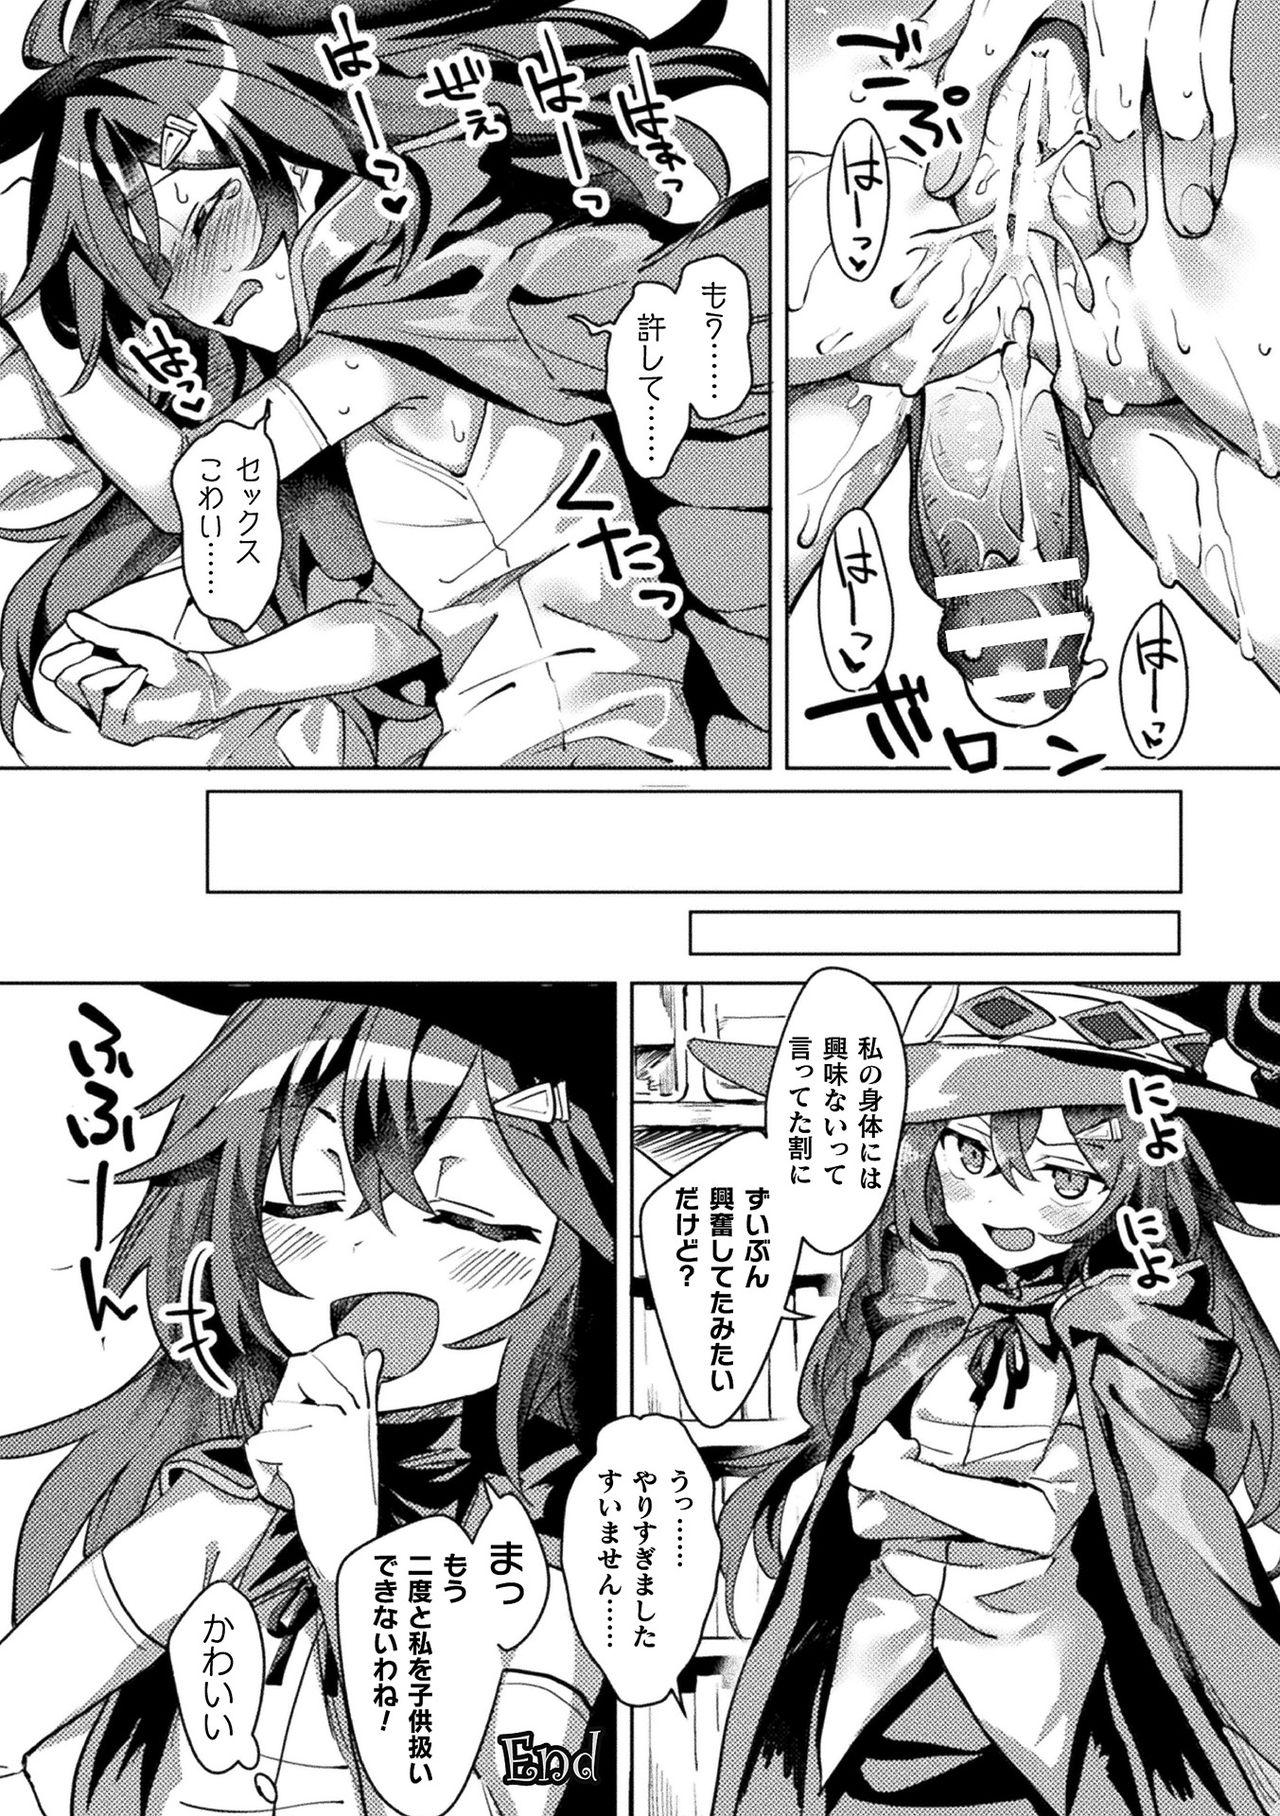 [Anthology] Bessatsu Comic Unreal Ponkotsu Fantasy Heroine H ~Doji o Funde Gyakuten Saretari Ero Trap ni Hamattari!?~ Vol. 1 [Digital] 42